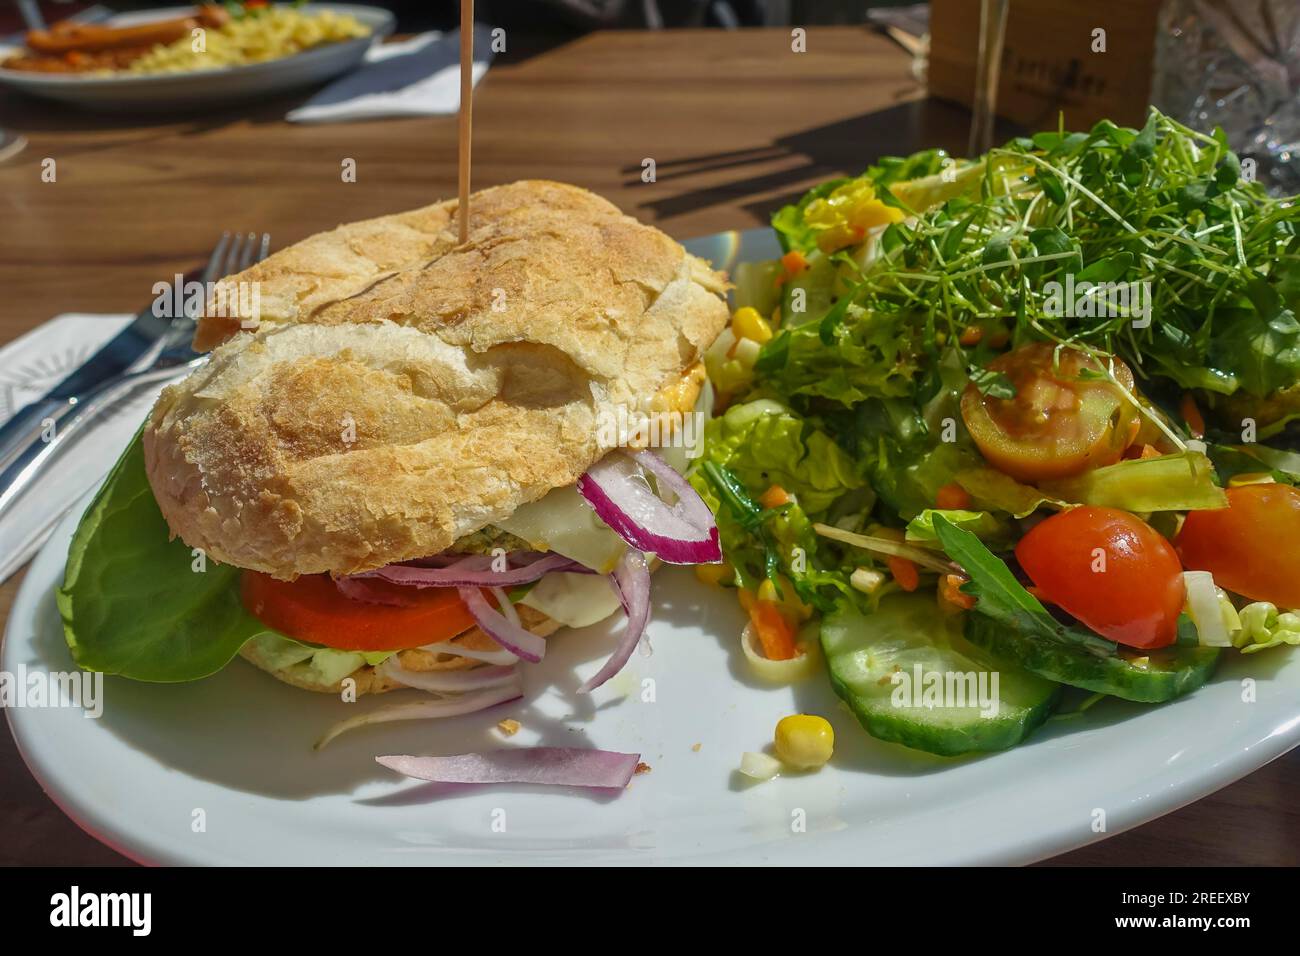 Vegetarische Küche, alpine Weidenburger, Burger auf Pflanzenbasis, Brötchen gefüllt mit Gemüse. Gesund, Salat, Tomaten, rote Zwiebeln, herzhaft, Gemüse Stockfoto